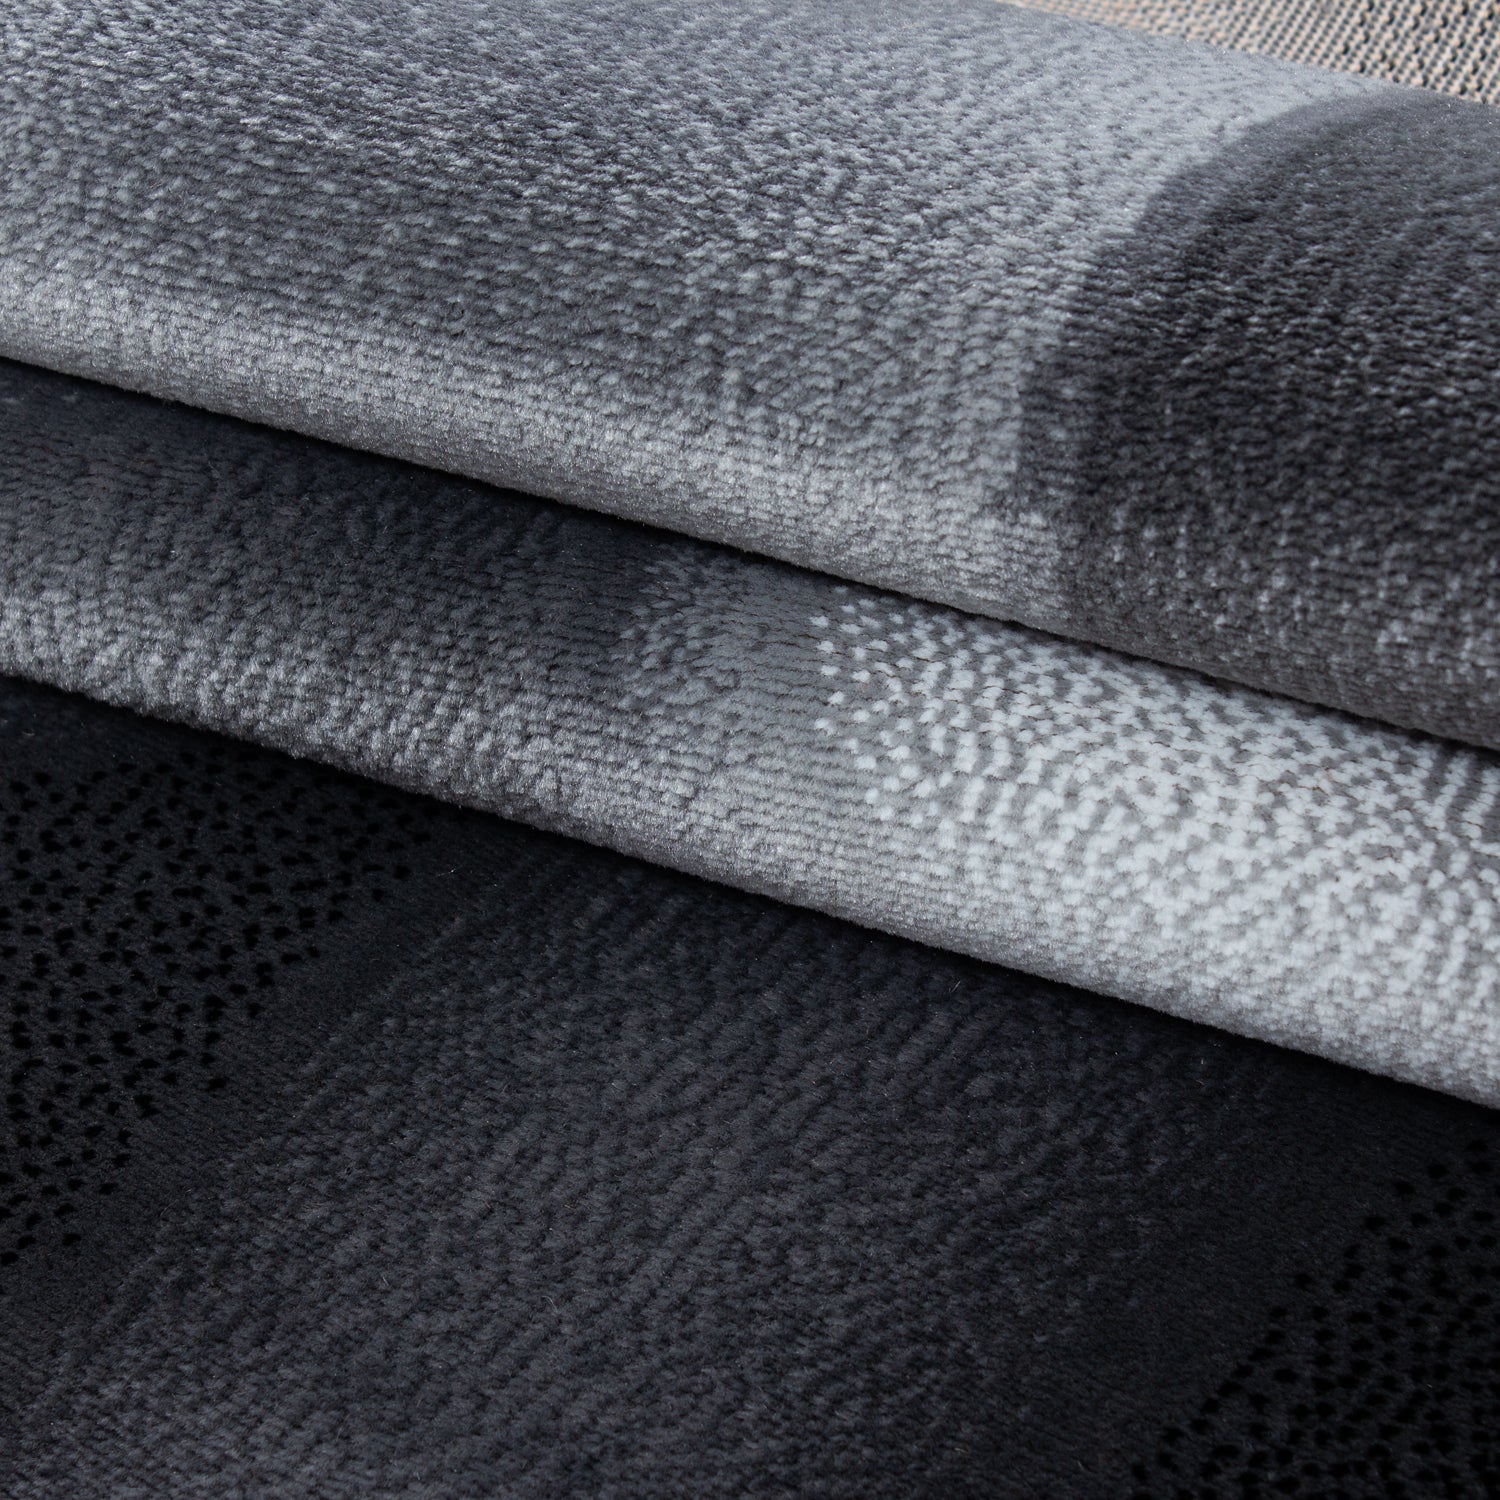 3 Teile Teppich Bettumrandung Läuferset Wellen Schatten Muster Schwarz Grau